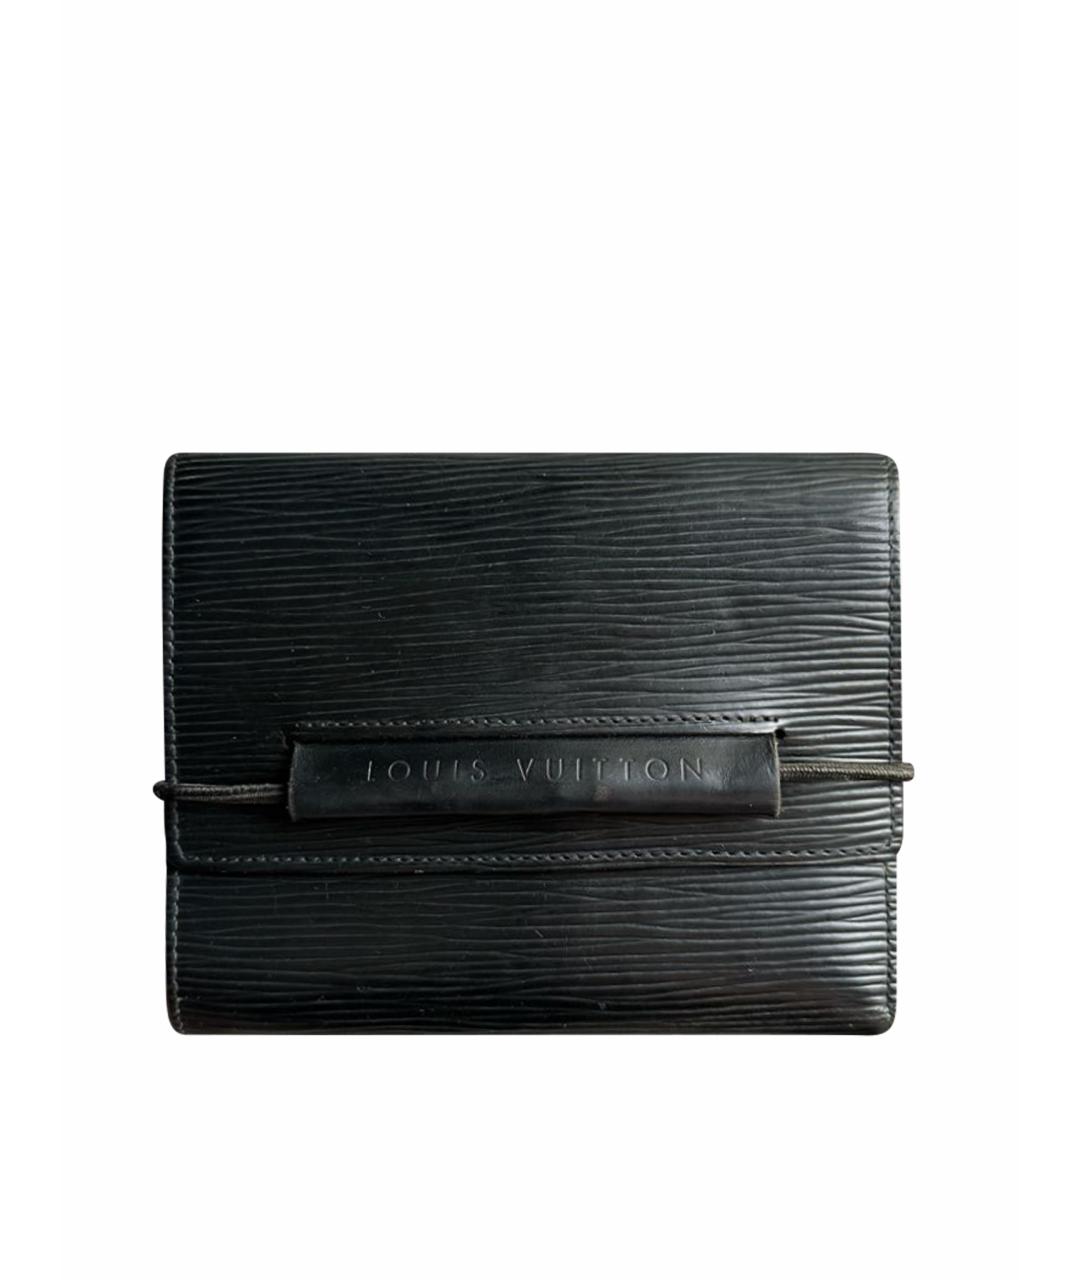 LOUIS VUITTON PRE-OWNED Черный кожаный кошелек, фото 1